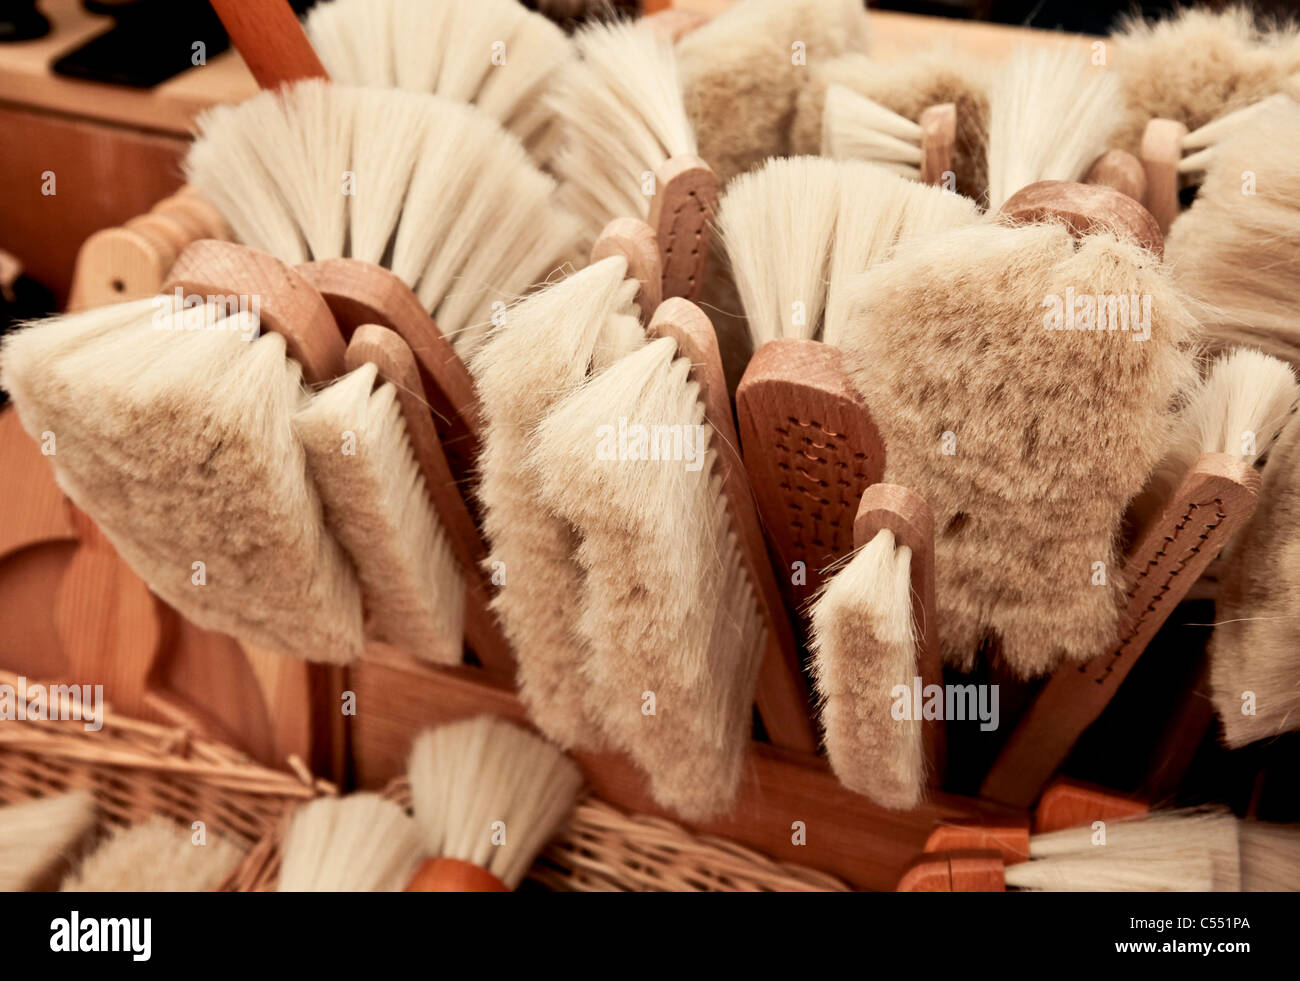 Lato spazzola con setole naturali - Handfeger mit Naturborsten Foto Stock